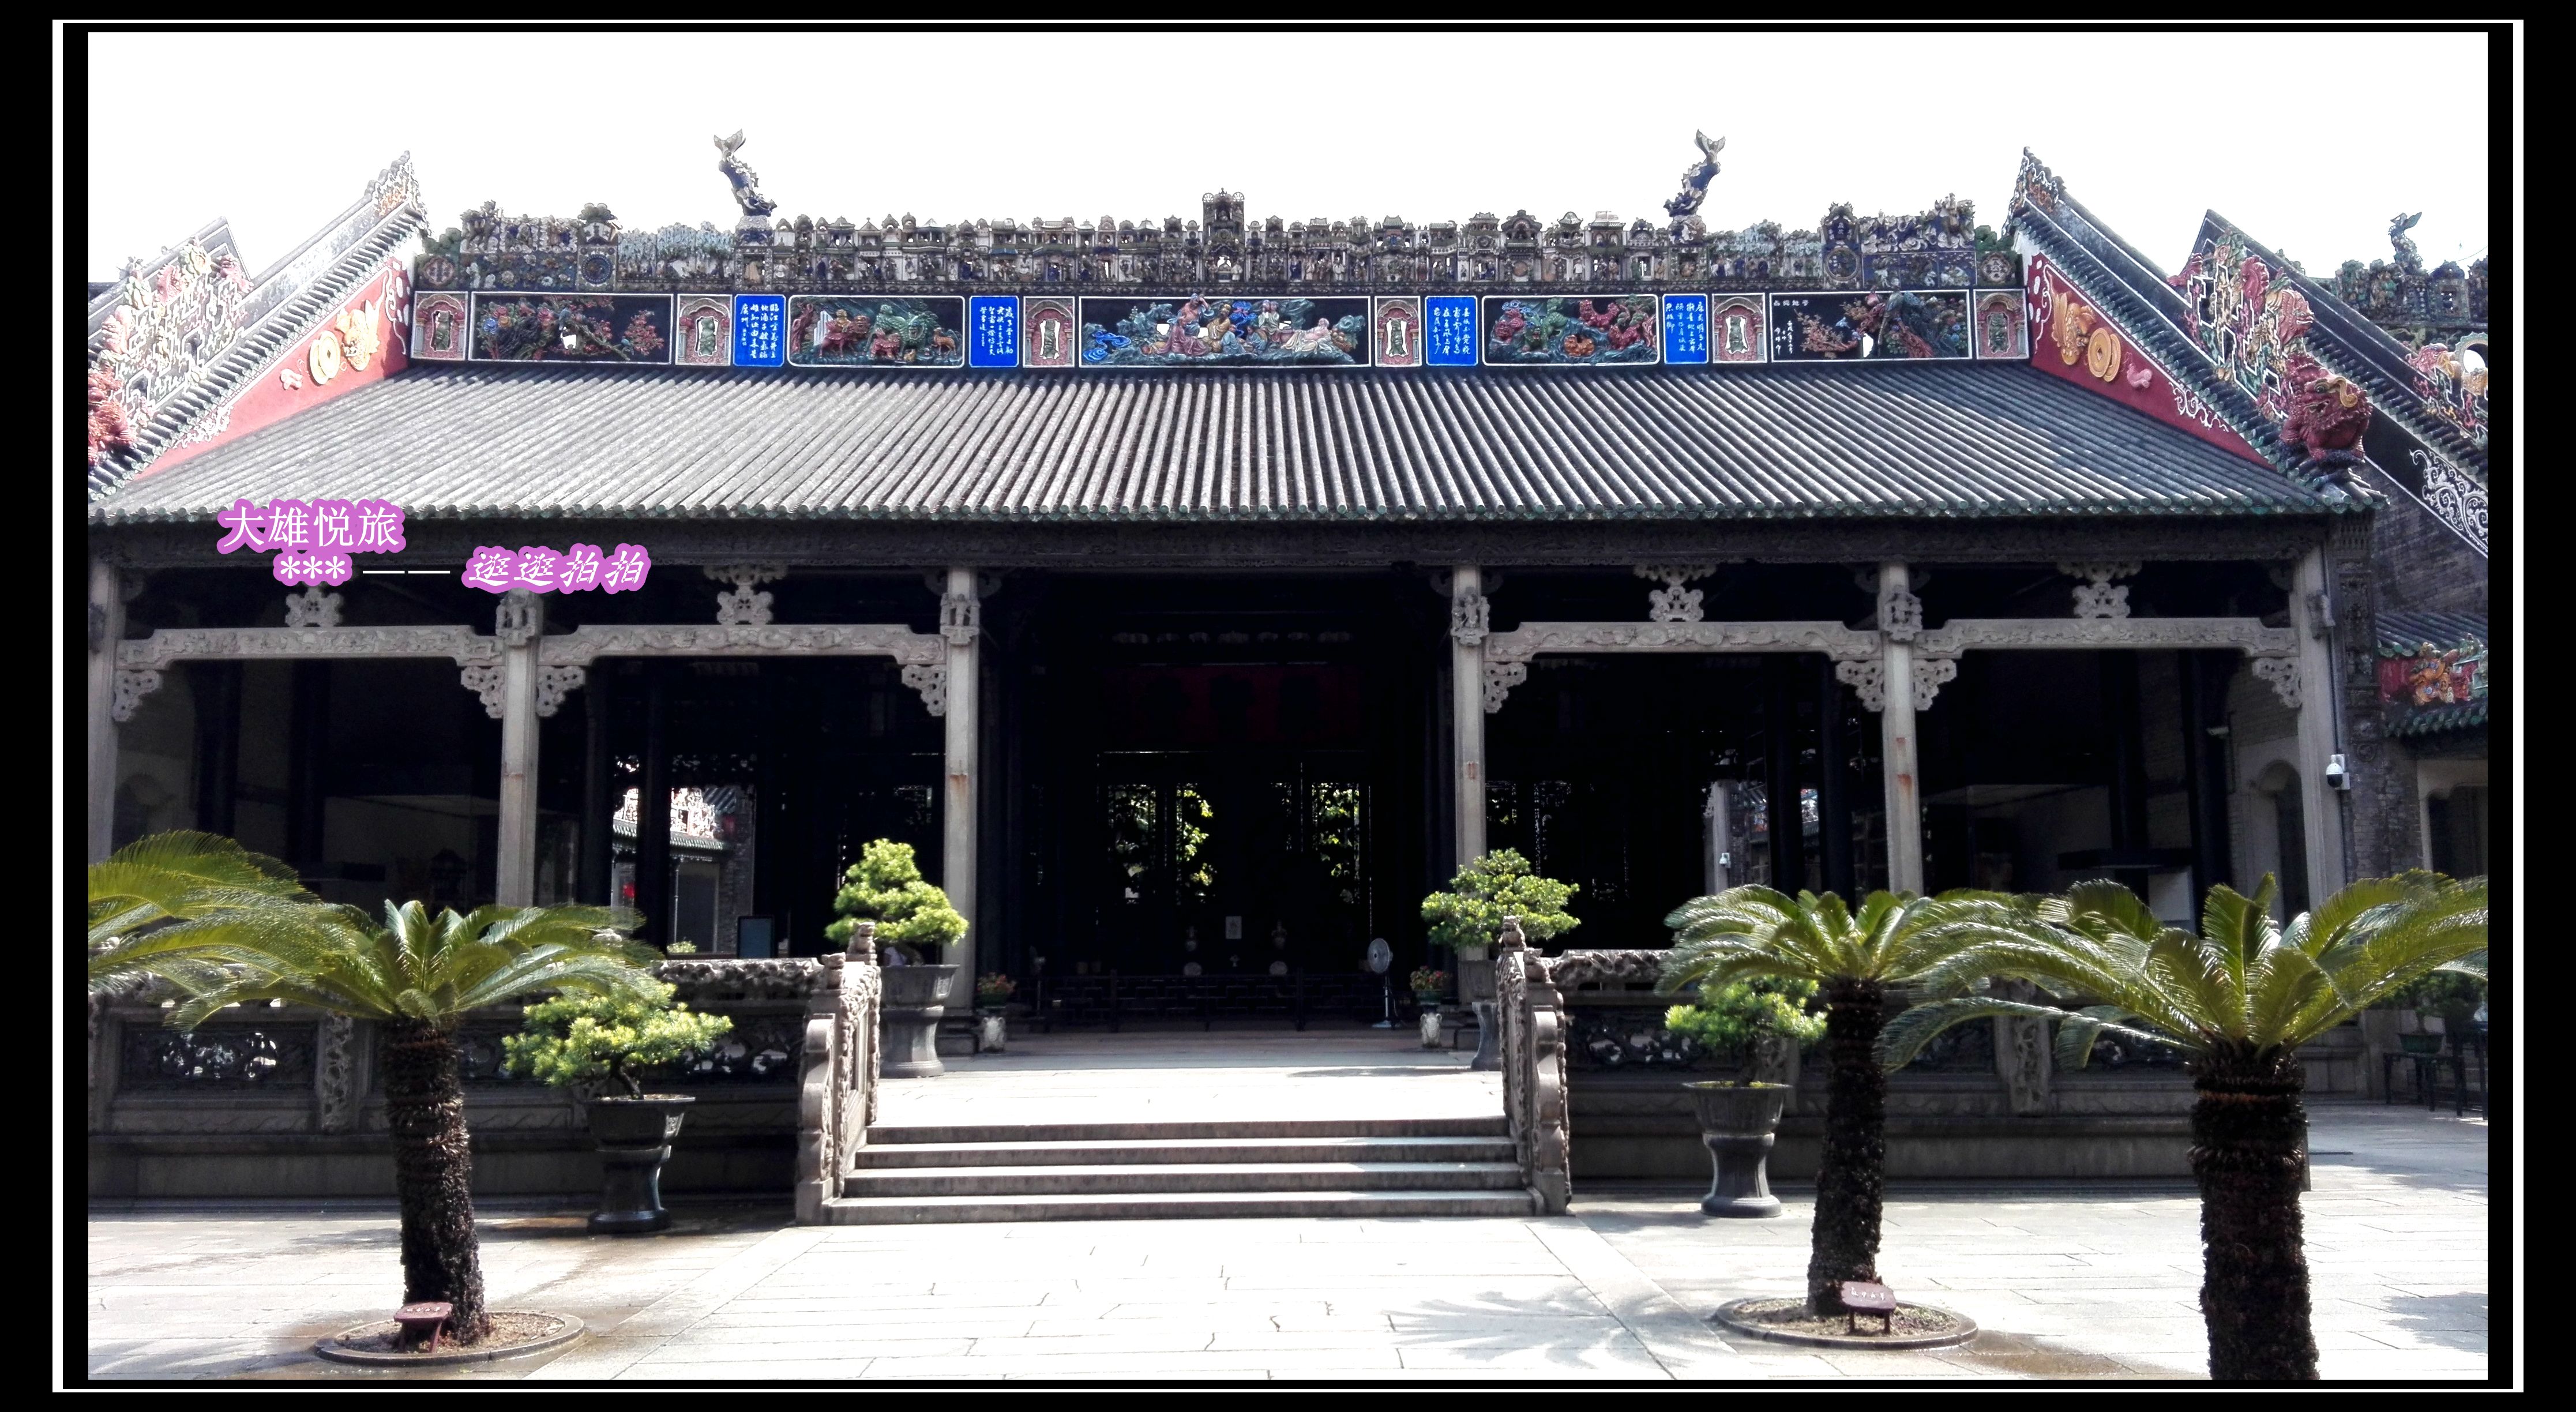 【携程攻略】广州陈家祠景点,陈家祠是广东现存祠堂中最富有广东特色的艺术建筑群，全国文物保护单…